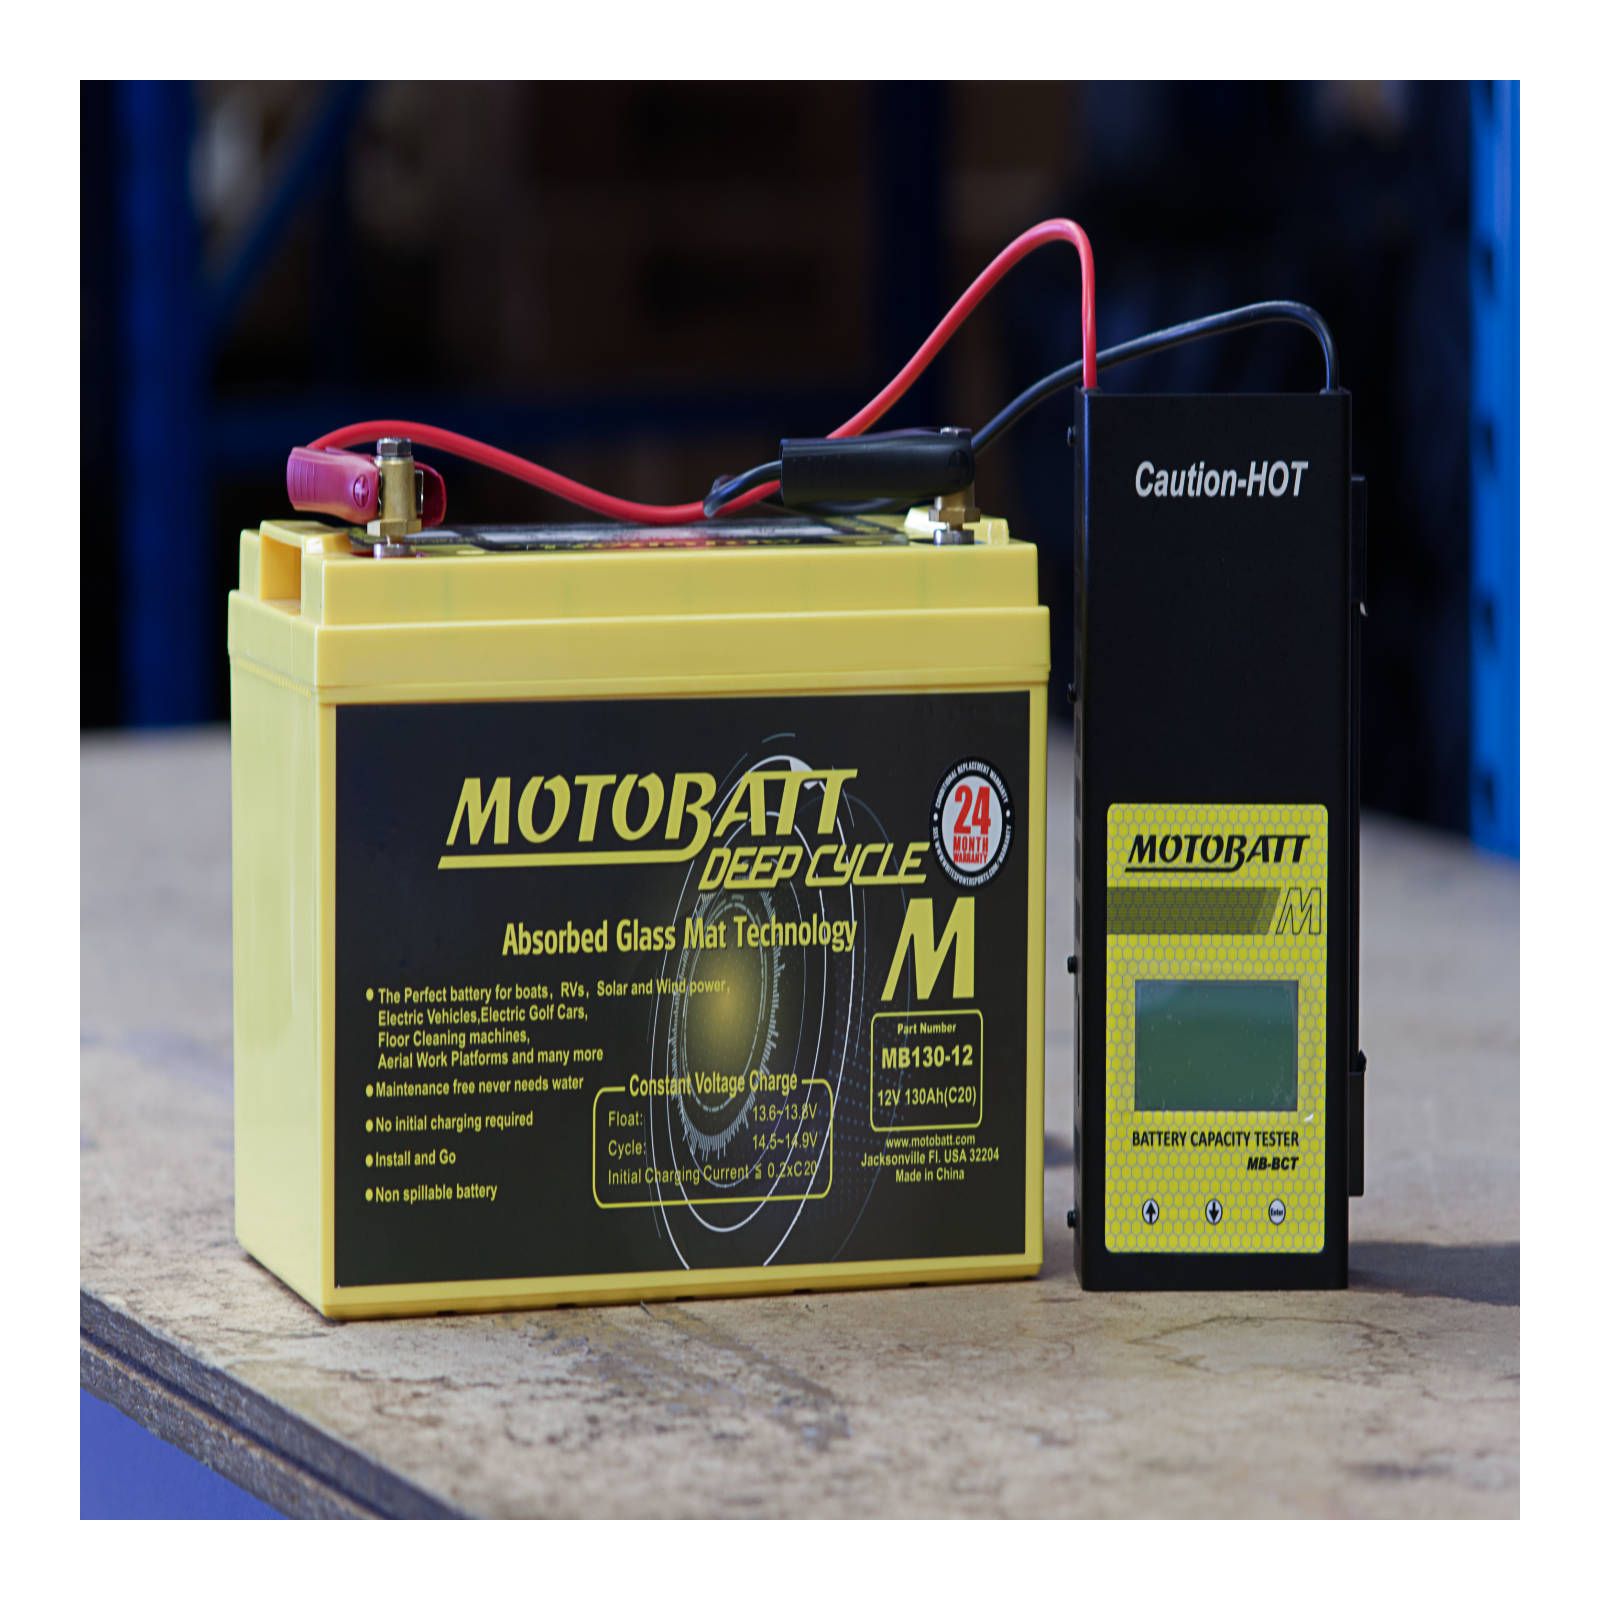 New MOTOBATT Battery Capacity Tester #MBZTBCT